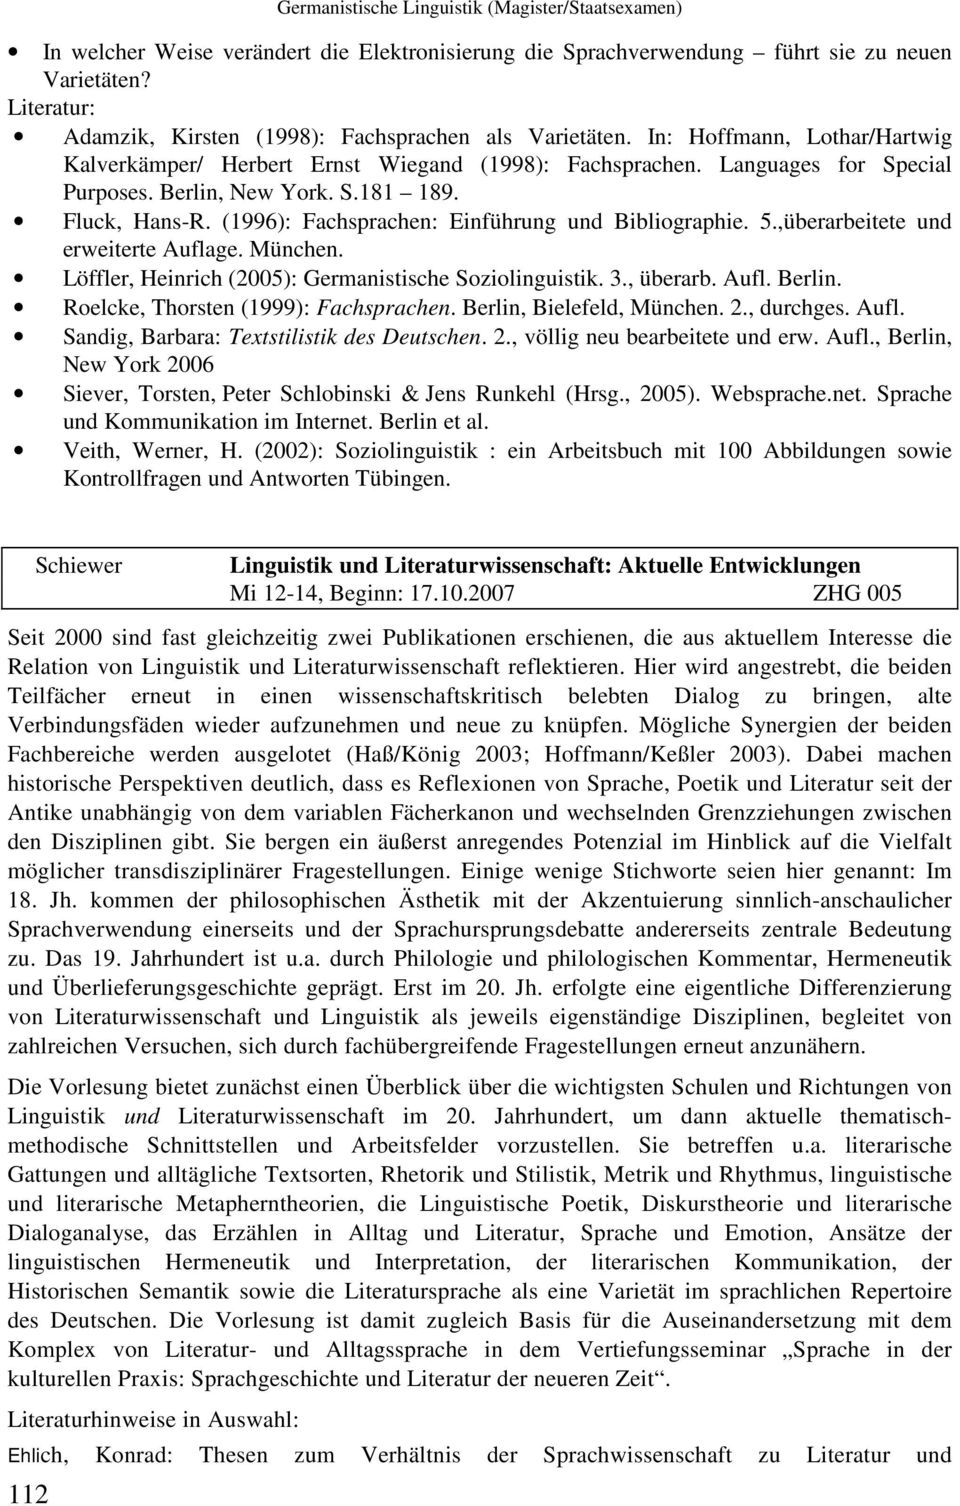 (1996): Fachsprachen: Einführung und Bibliographie. 5.,überarbeitete und erweiterte Auflage. München. Löffler, Heinrich (2005): Germanistische Soziolinguistik. 3., überarb. Aufl. Berlin.